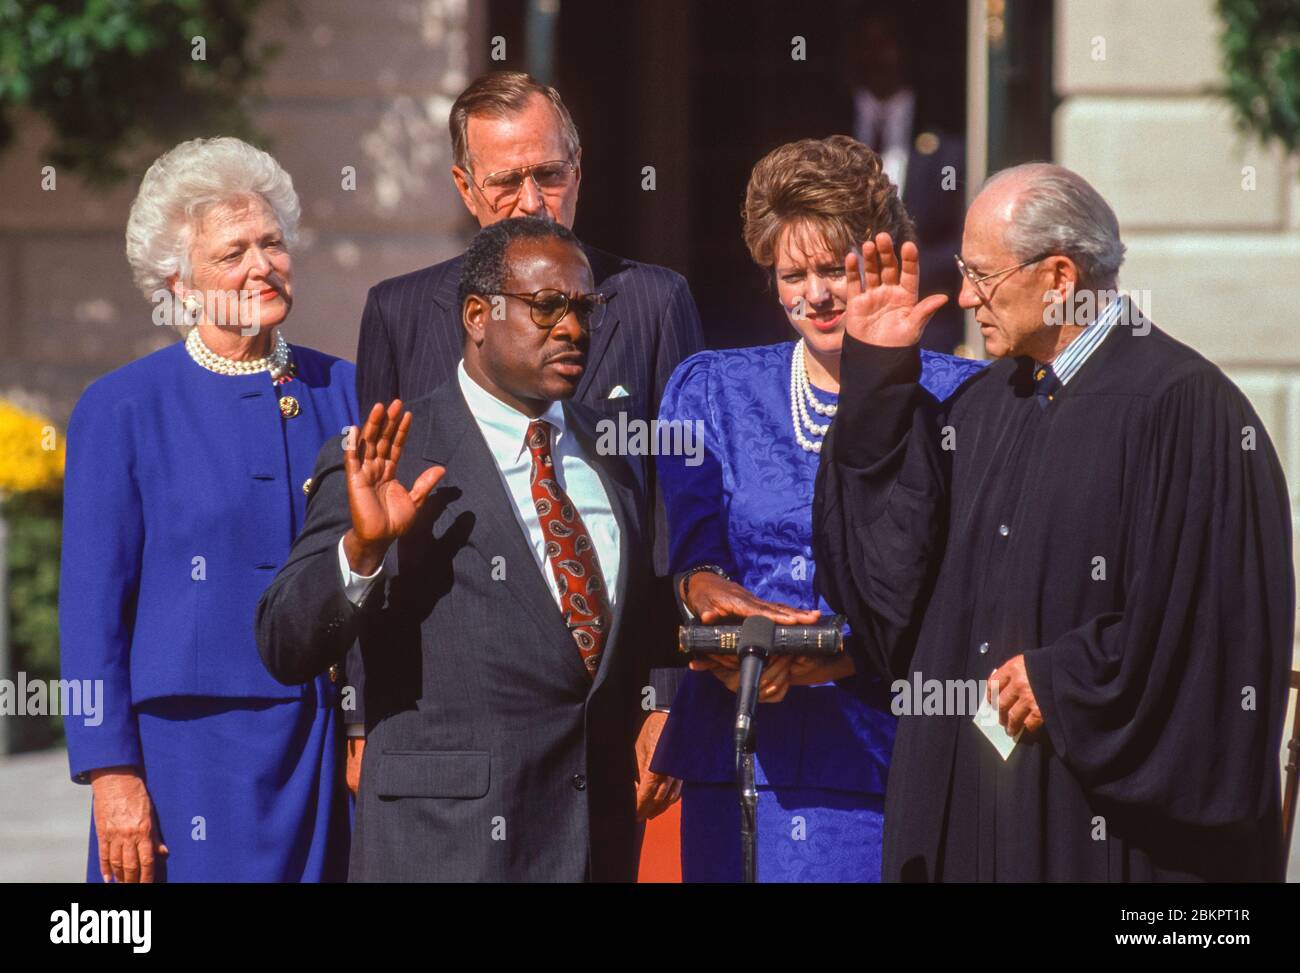 WASHINGTON, DC, USA, 18 OCTOBRE 1991: Le juge Clarence Thomas, de la Cour suprême, a prêté serment à la Maison Blanche par le juge Byron White, en tant que président George H. W. Bush, la première dame Barbara Bush et Virginia Lamp Thomas look on. Banque D'Images